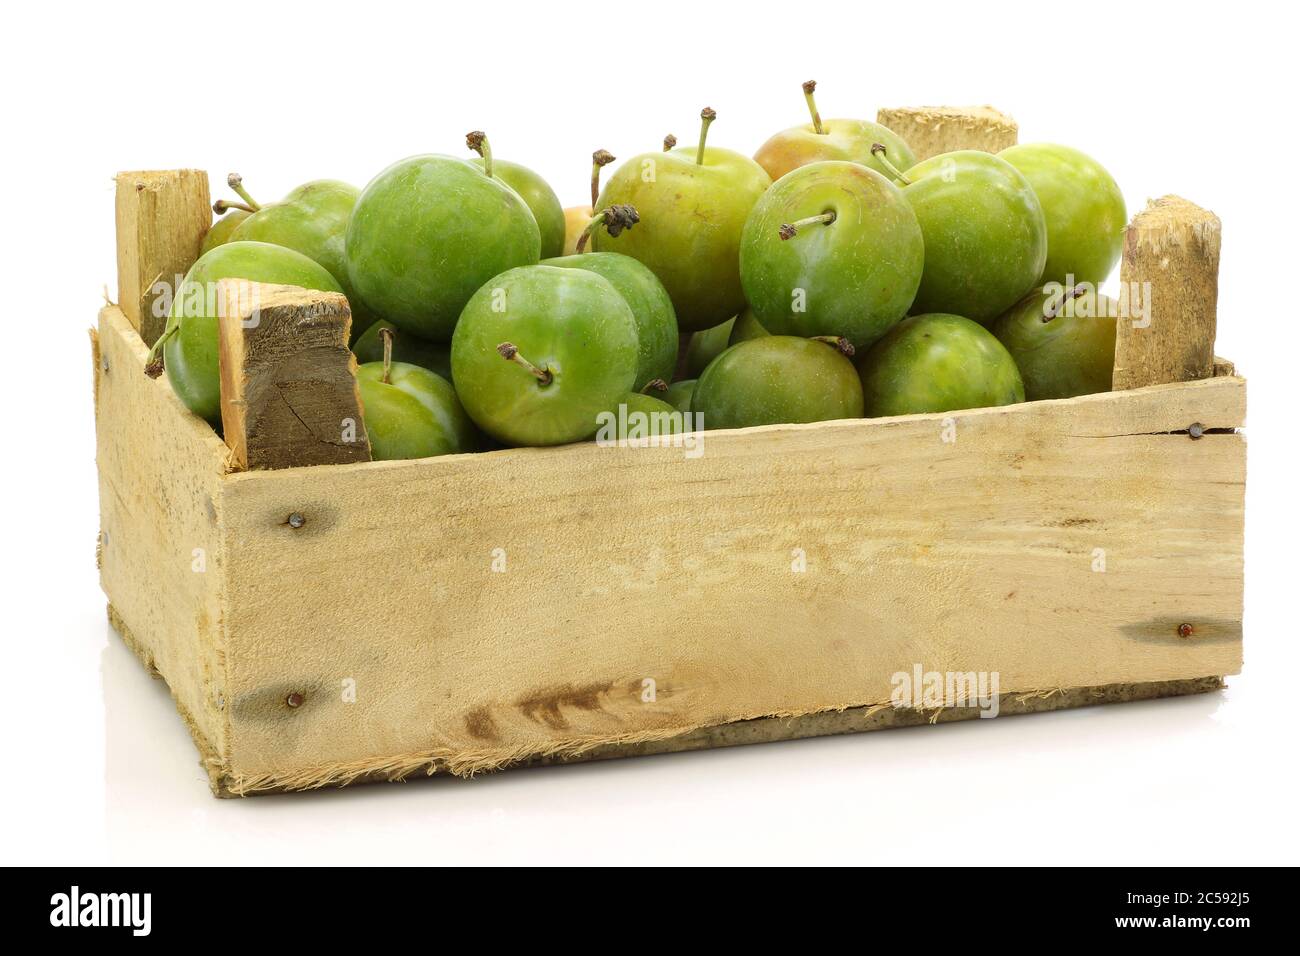 Prunes 'Reine Claude' fraîches dans une caisse en bois sur fond blanc Banque D'Images